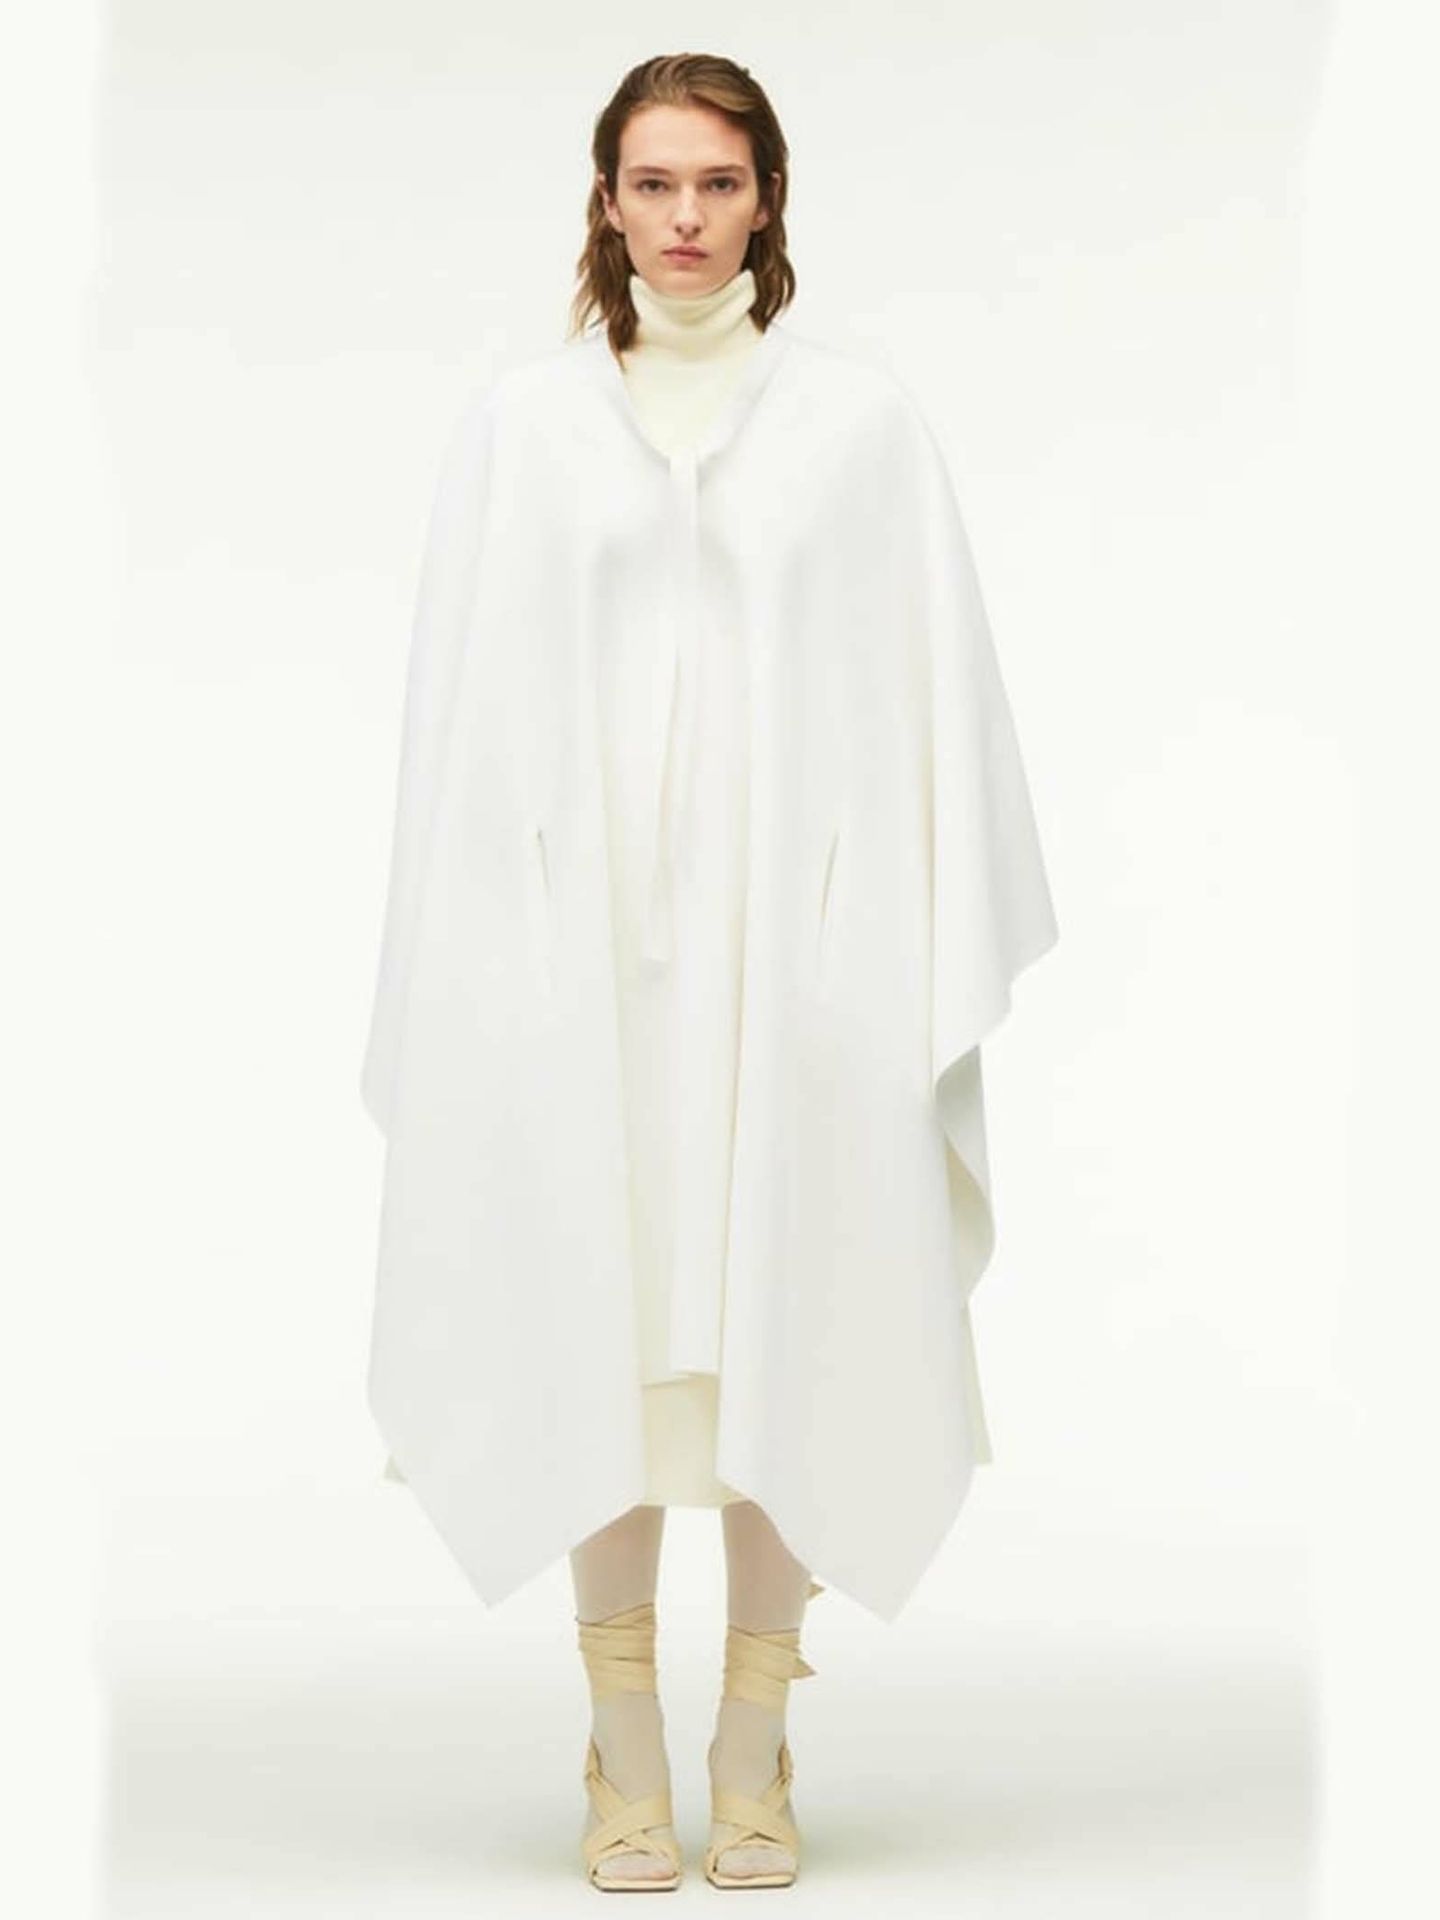 Zara Studio: Vestidos, abrigos y faldas sin género que nos transportan a Hollywood. (Zara/Cortesía)